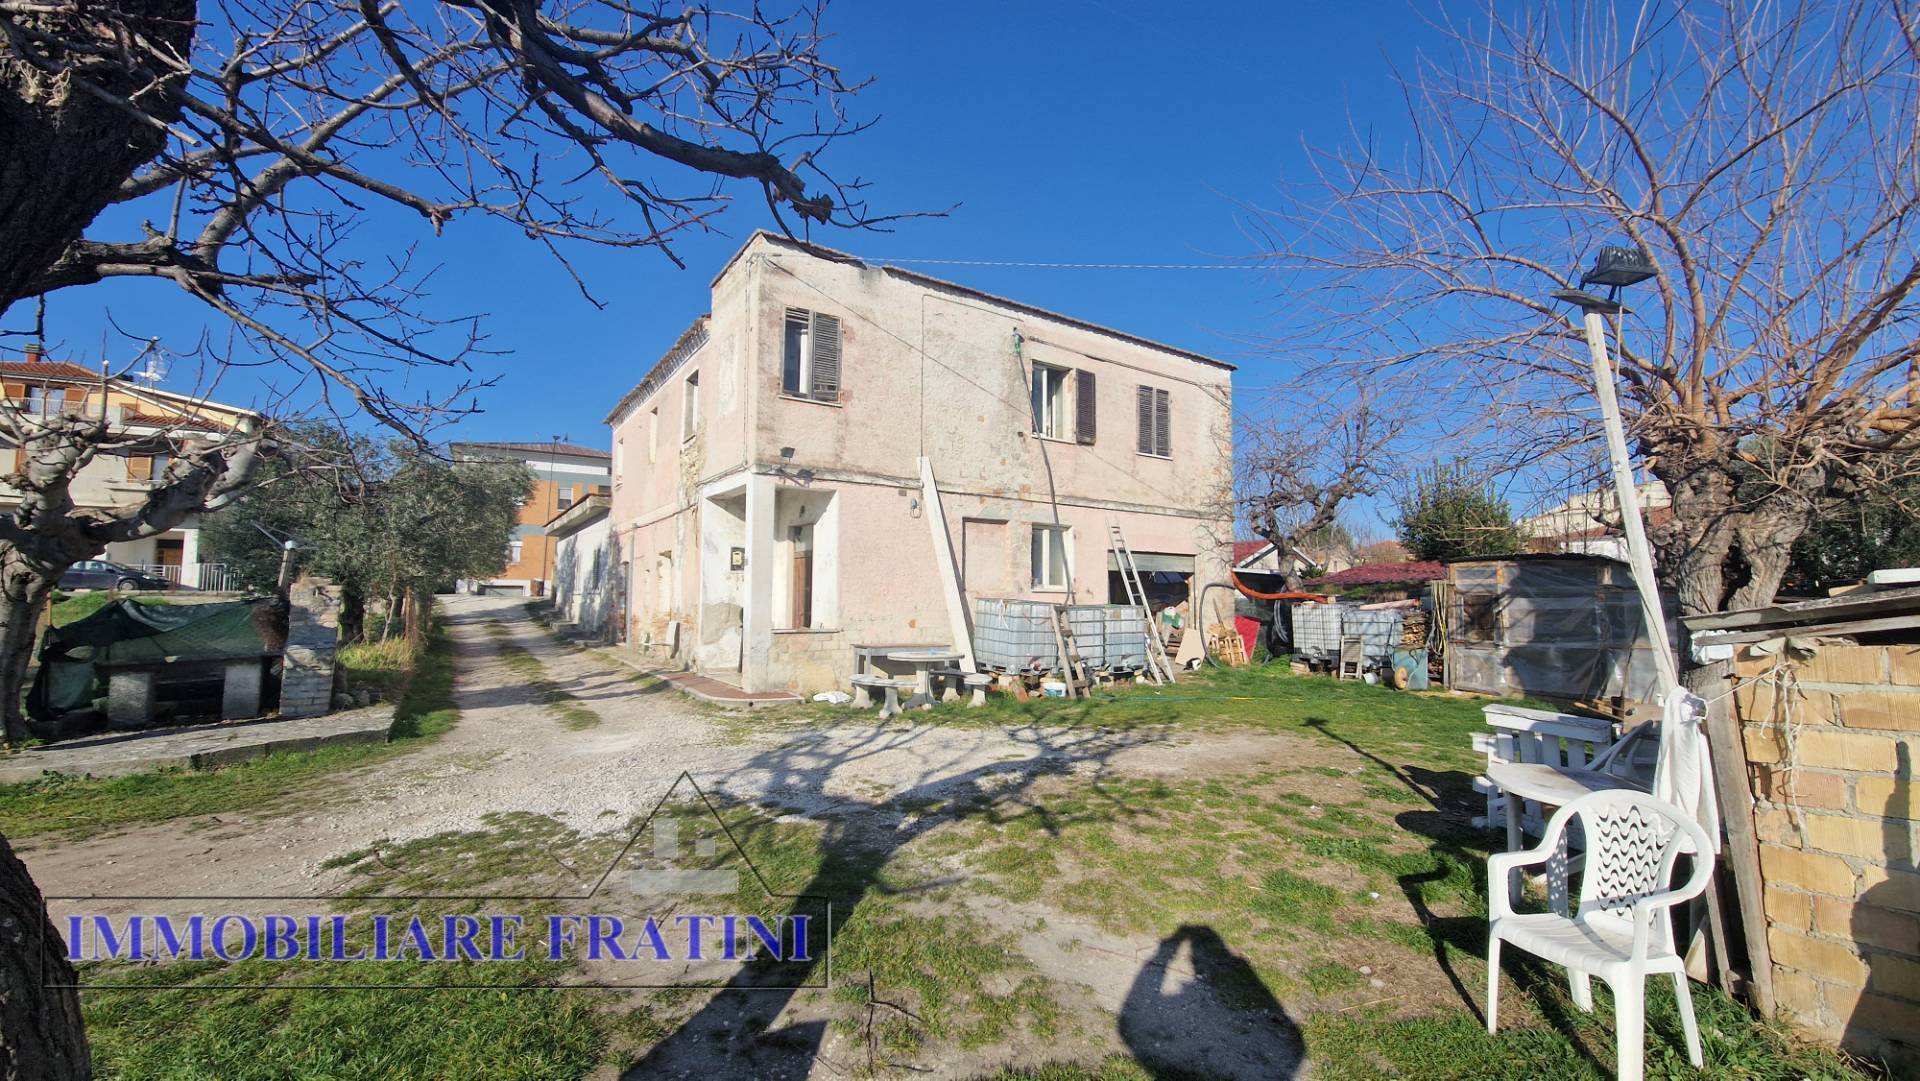 Rustico / Casale in vendita a Sant'Egidio alla Vibrata, 5 locali, prezzo € 100.000 | PortaleAgenzieImmobiliari.it